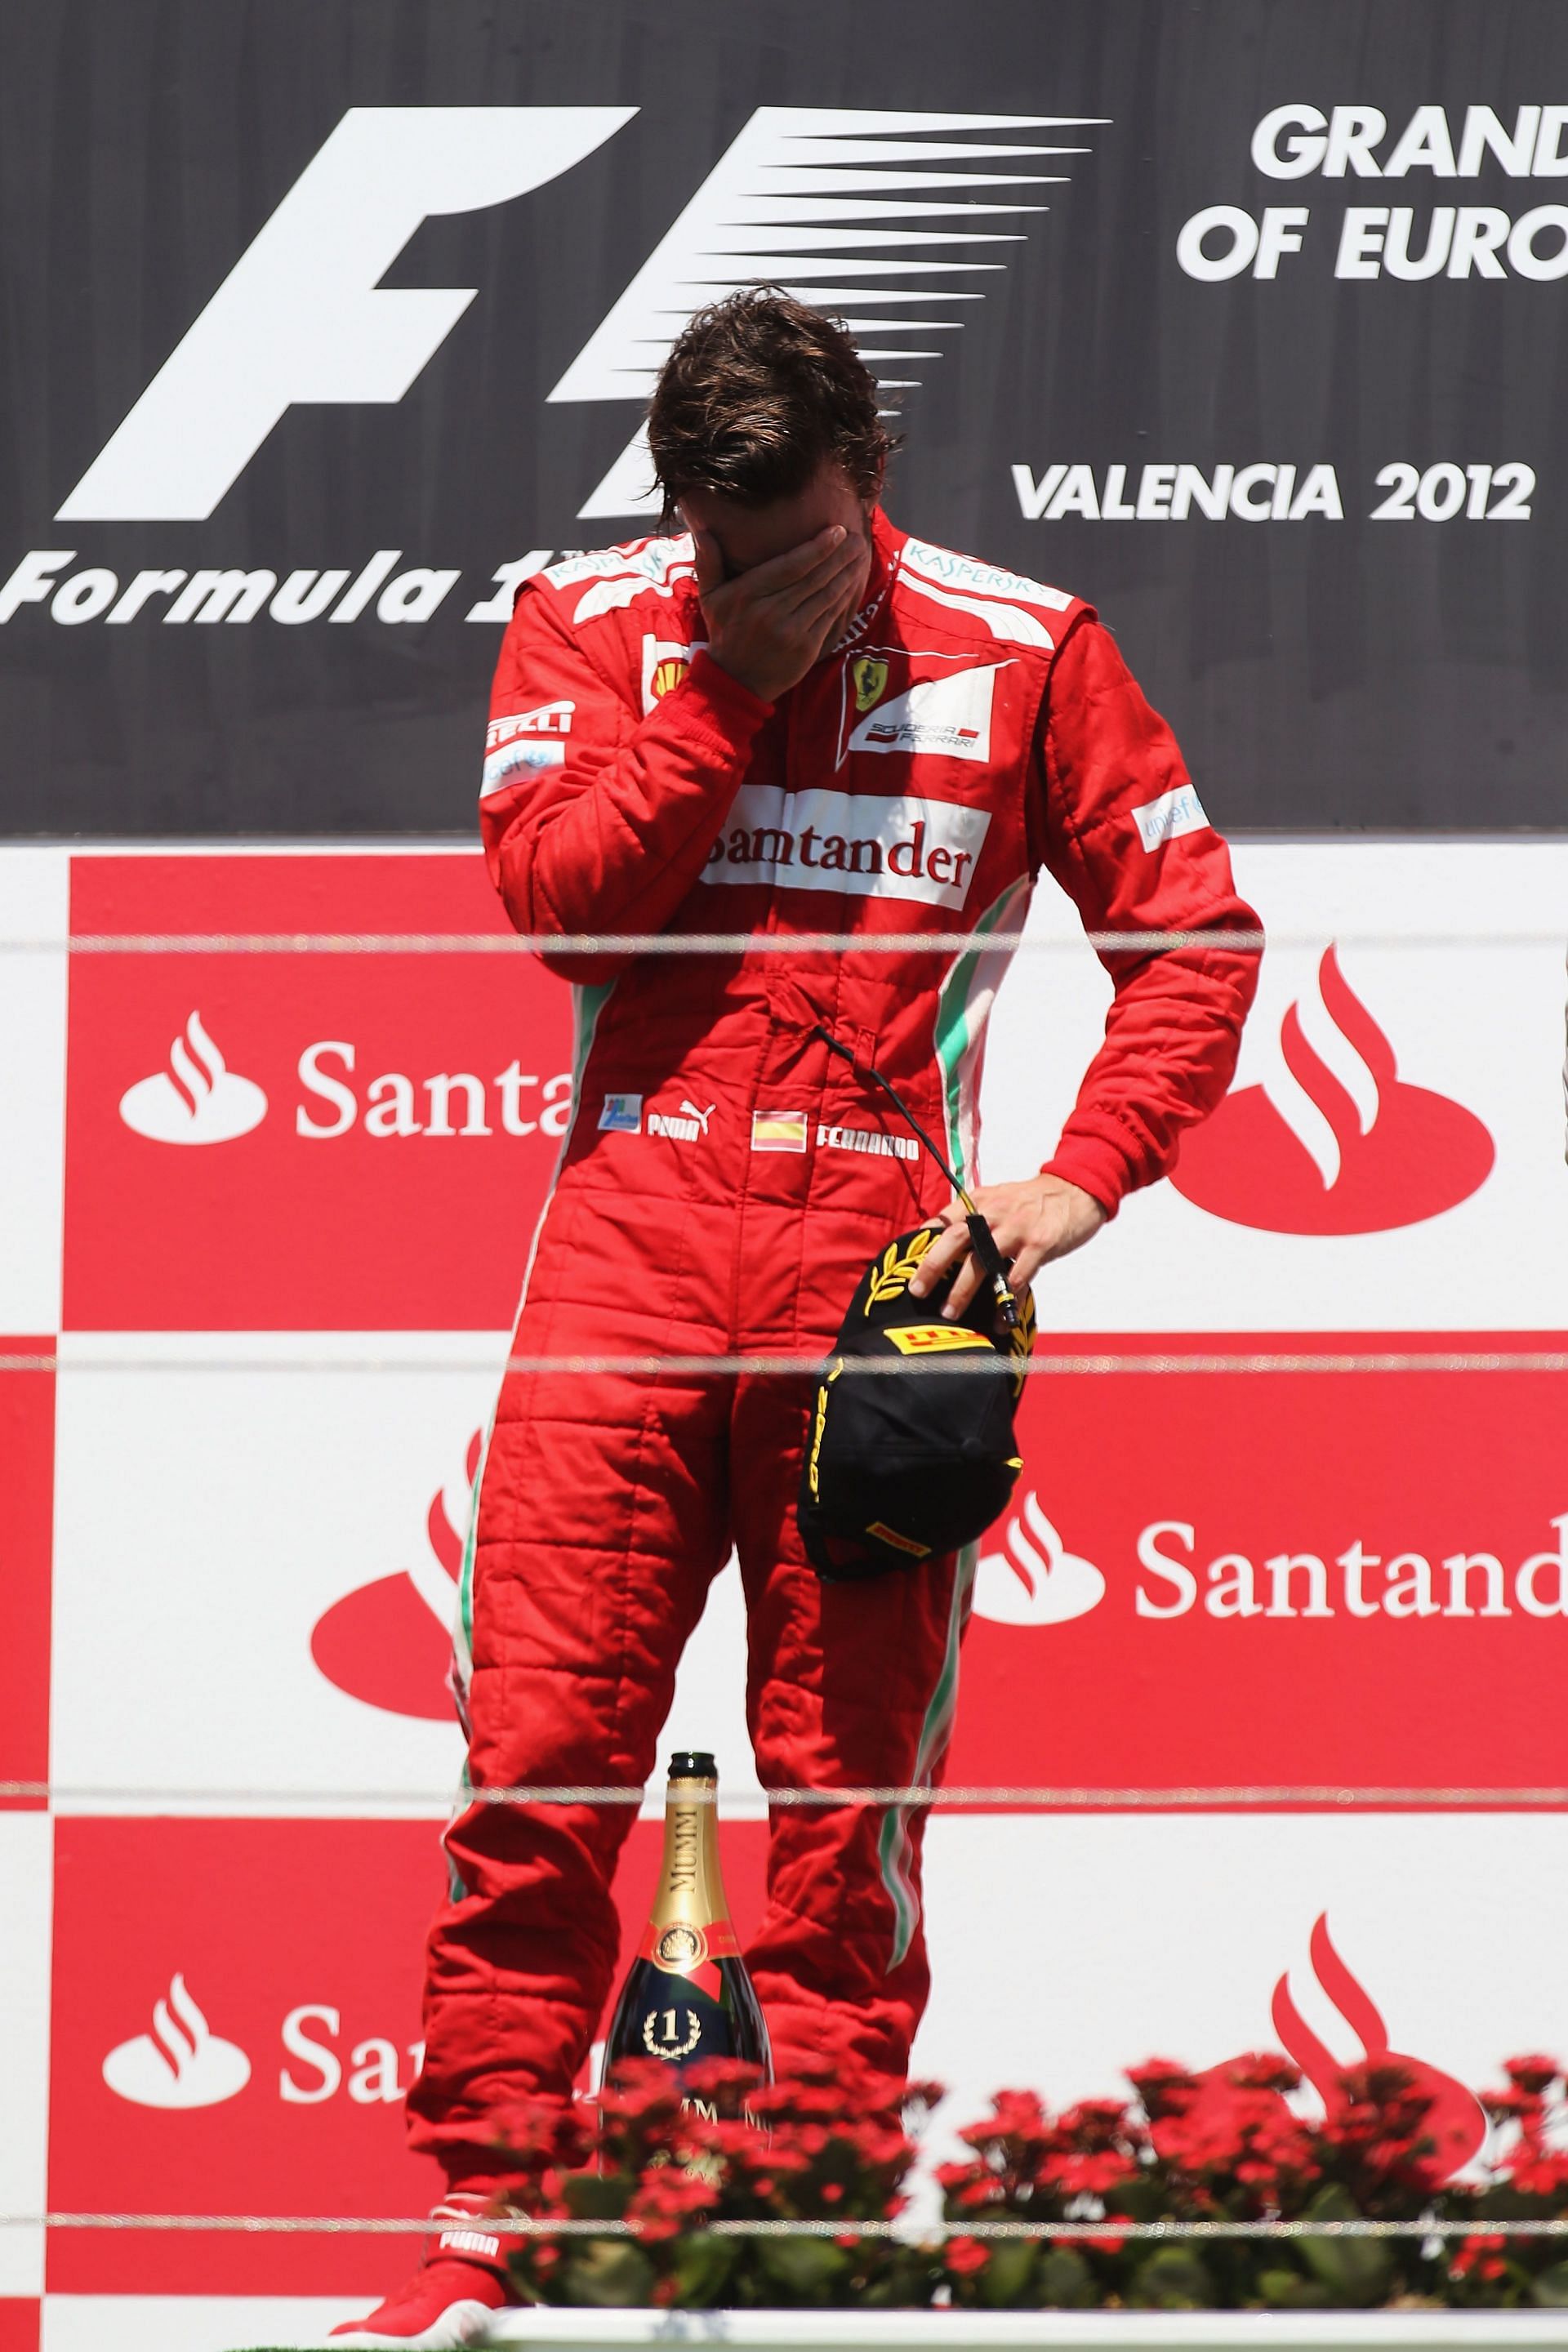 An emotional Fernando Alonso after winning the 2012 European Grand Prix